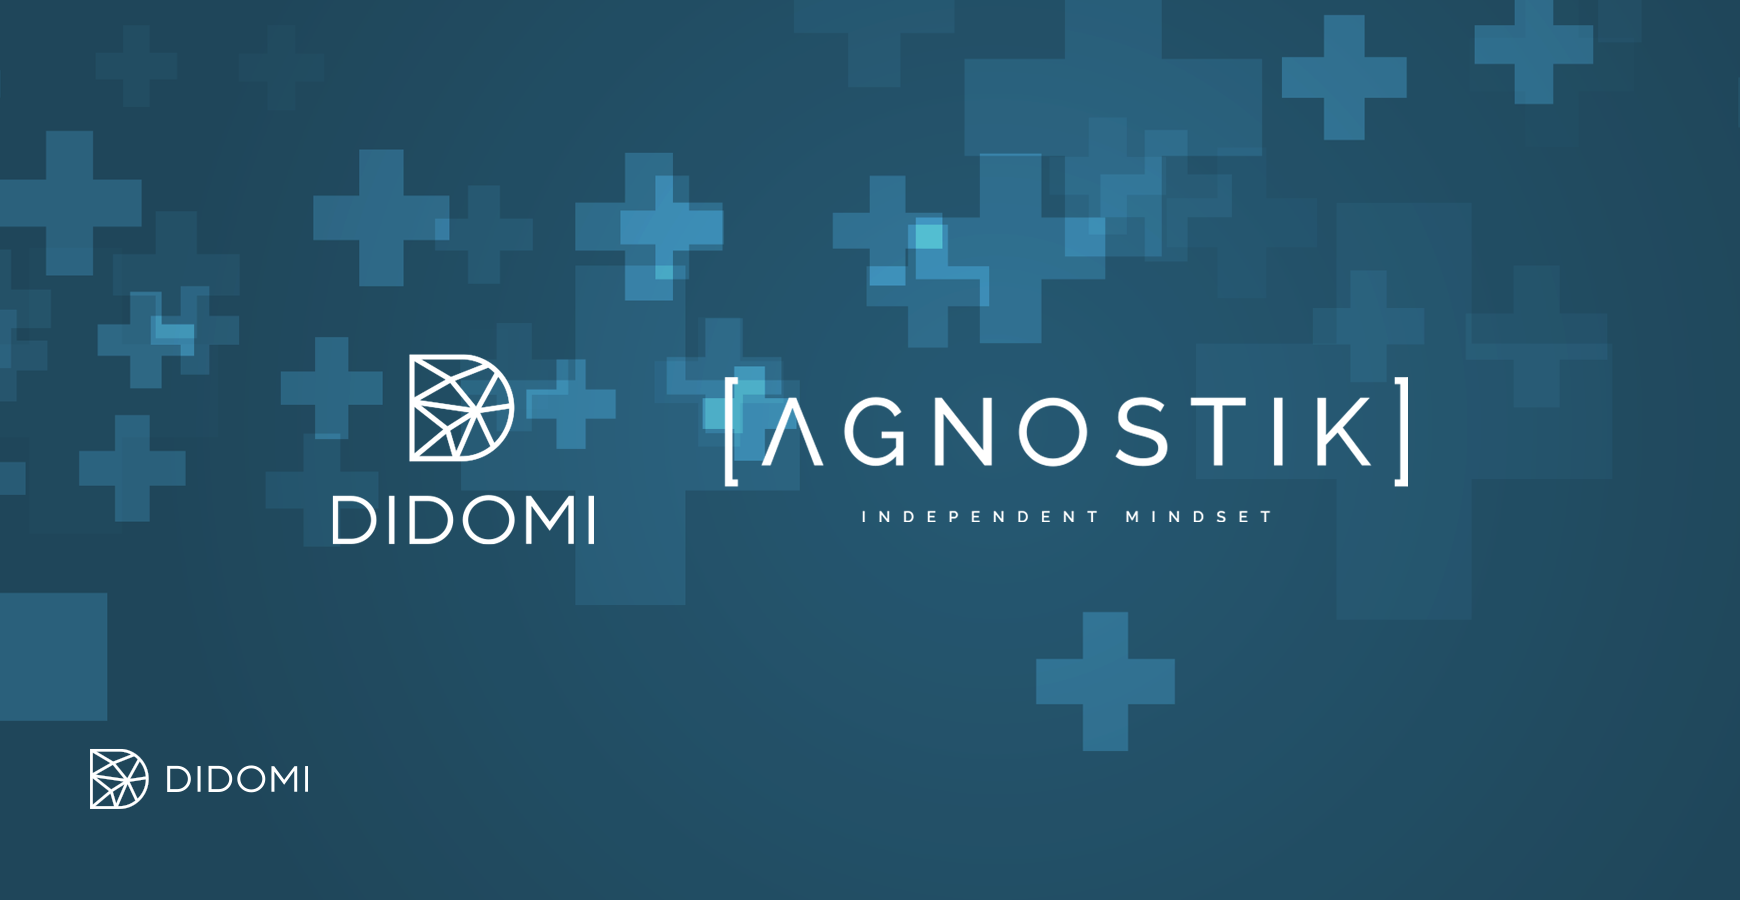 Didomi übernimmt das Datenschutz- und Compliance-Startup Agnostik